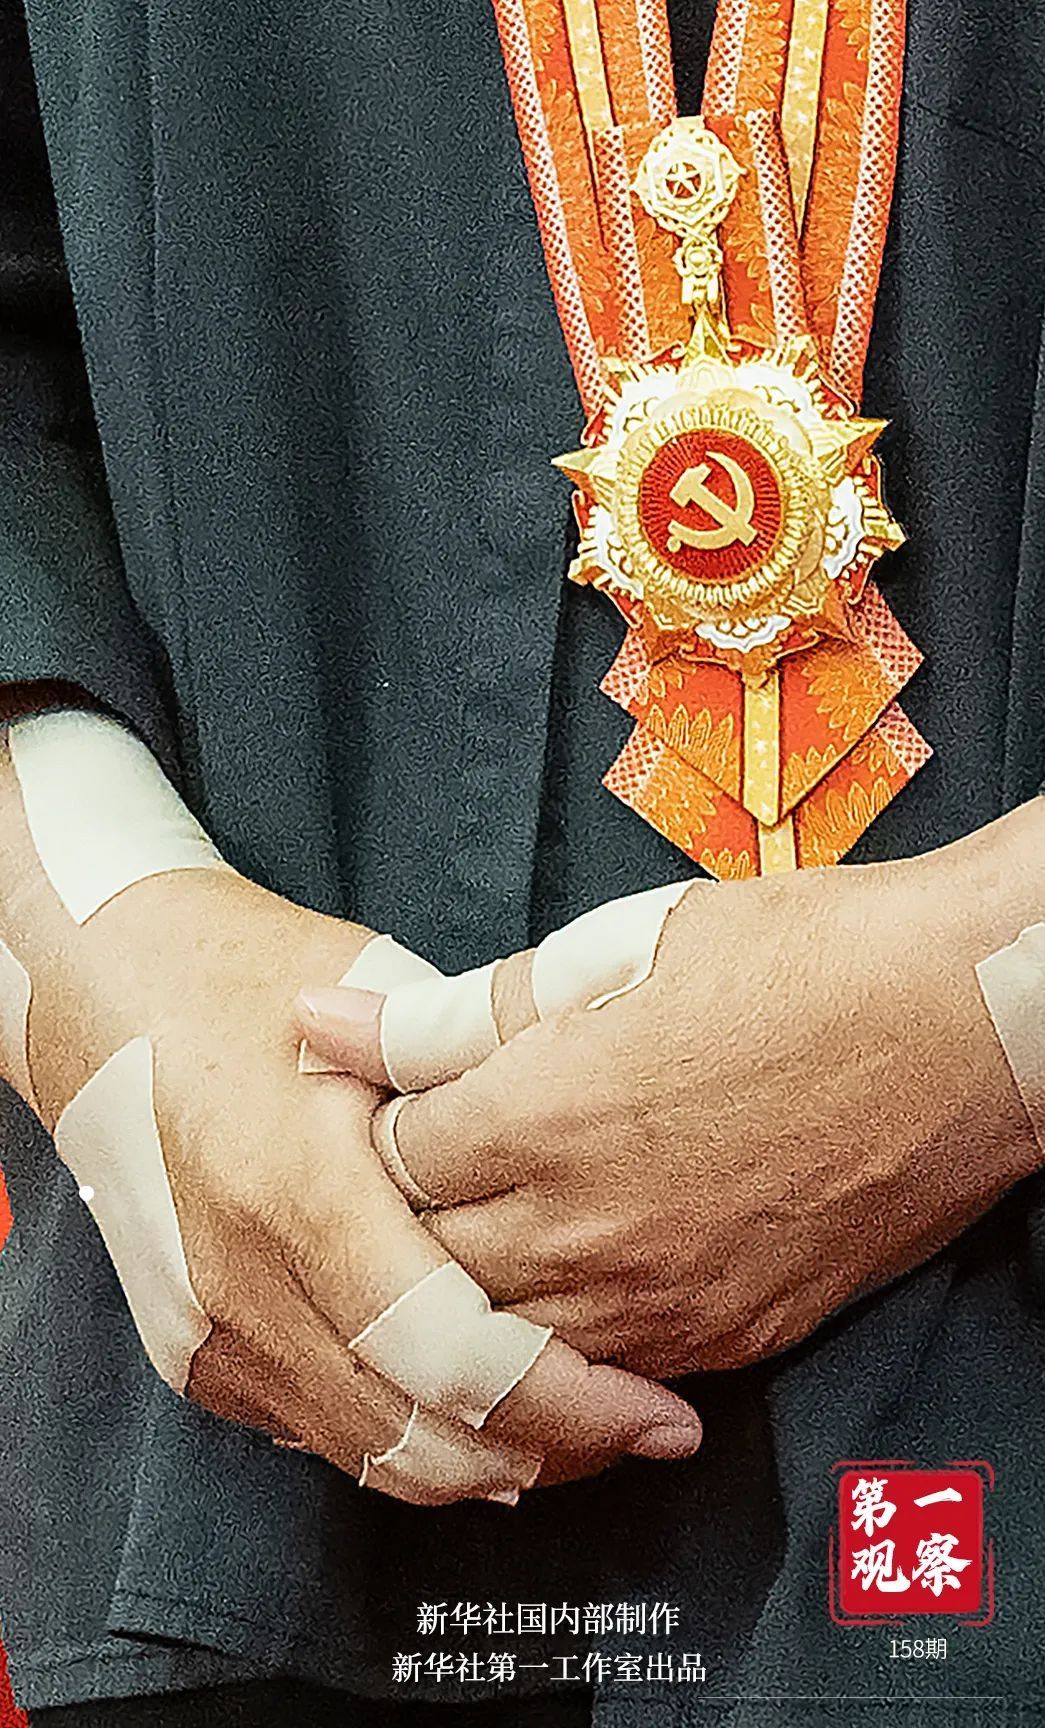 一双贴满膏药的普通劳动者的手,捧起代表党内最高荣誉的"七一勋章".